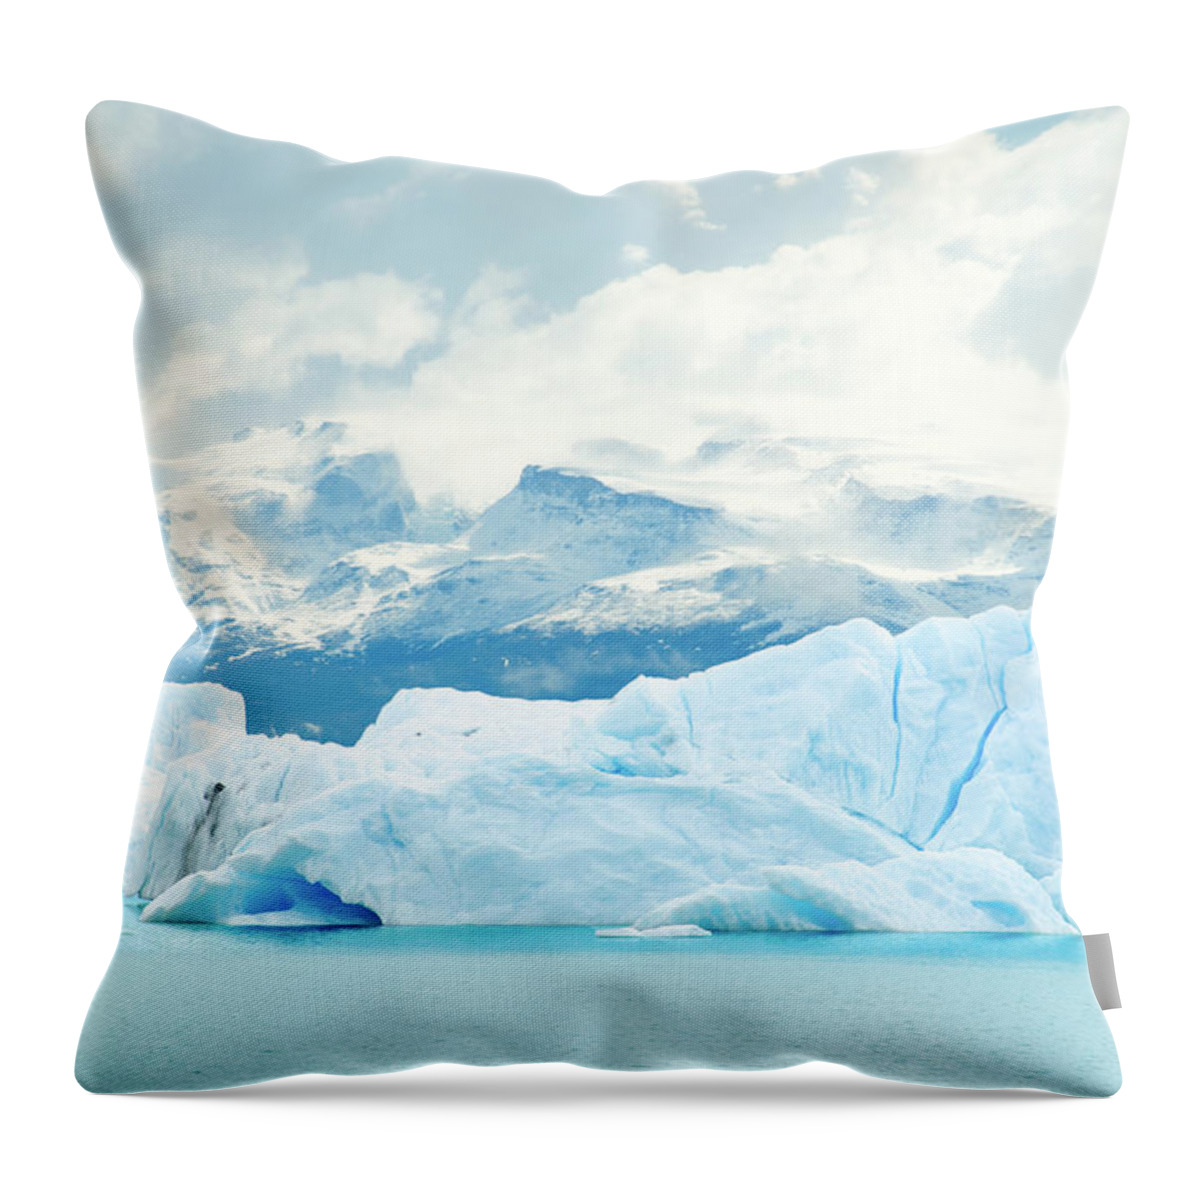 Scenics Throw Pillow featuring the photograph Paisaje Glaciar by Jonatan Martin